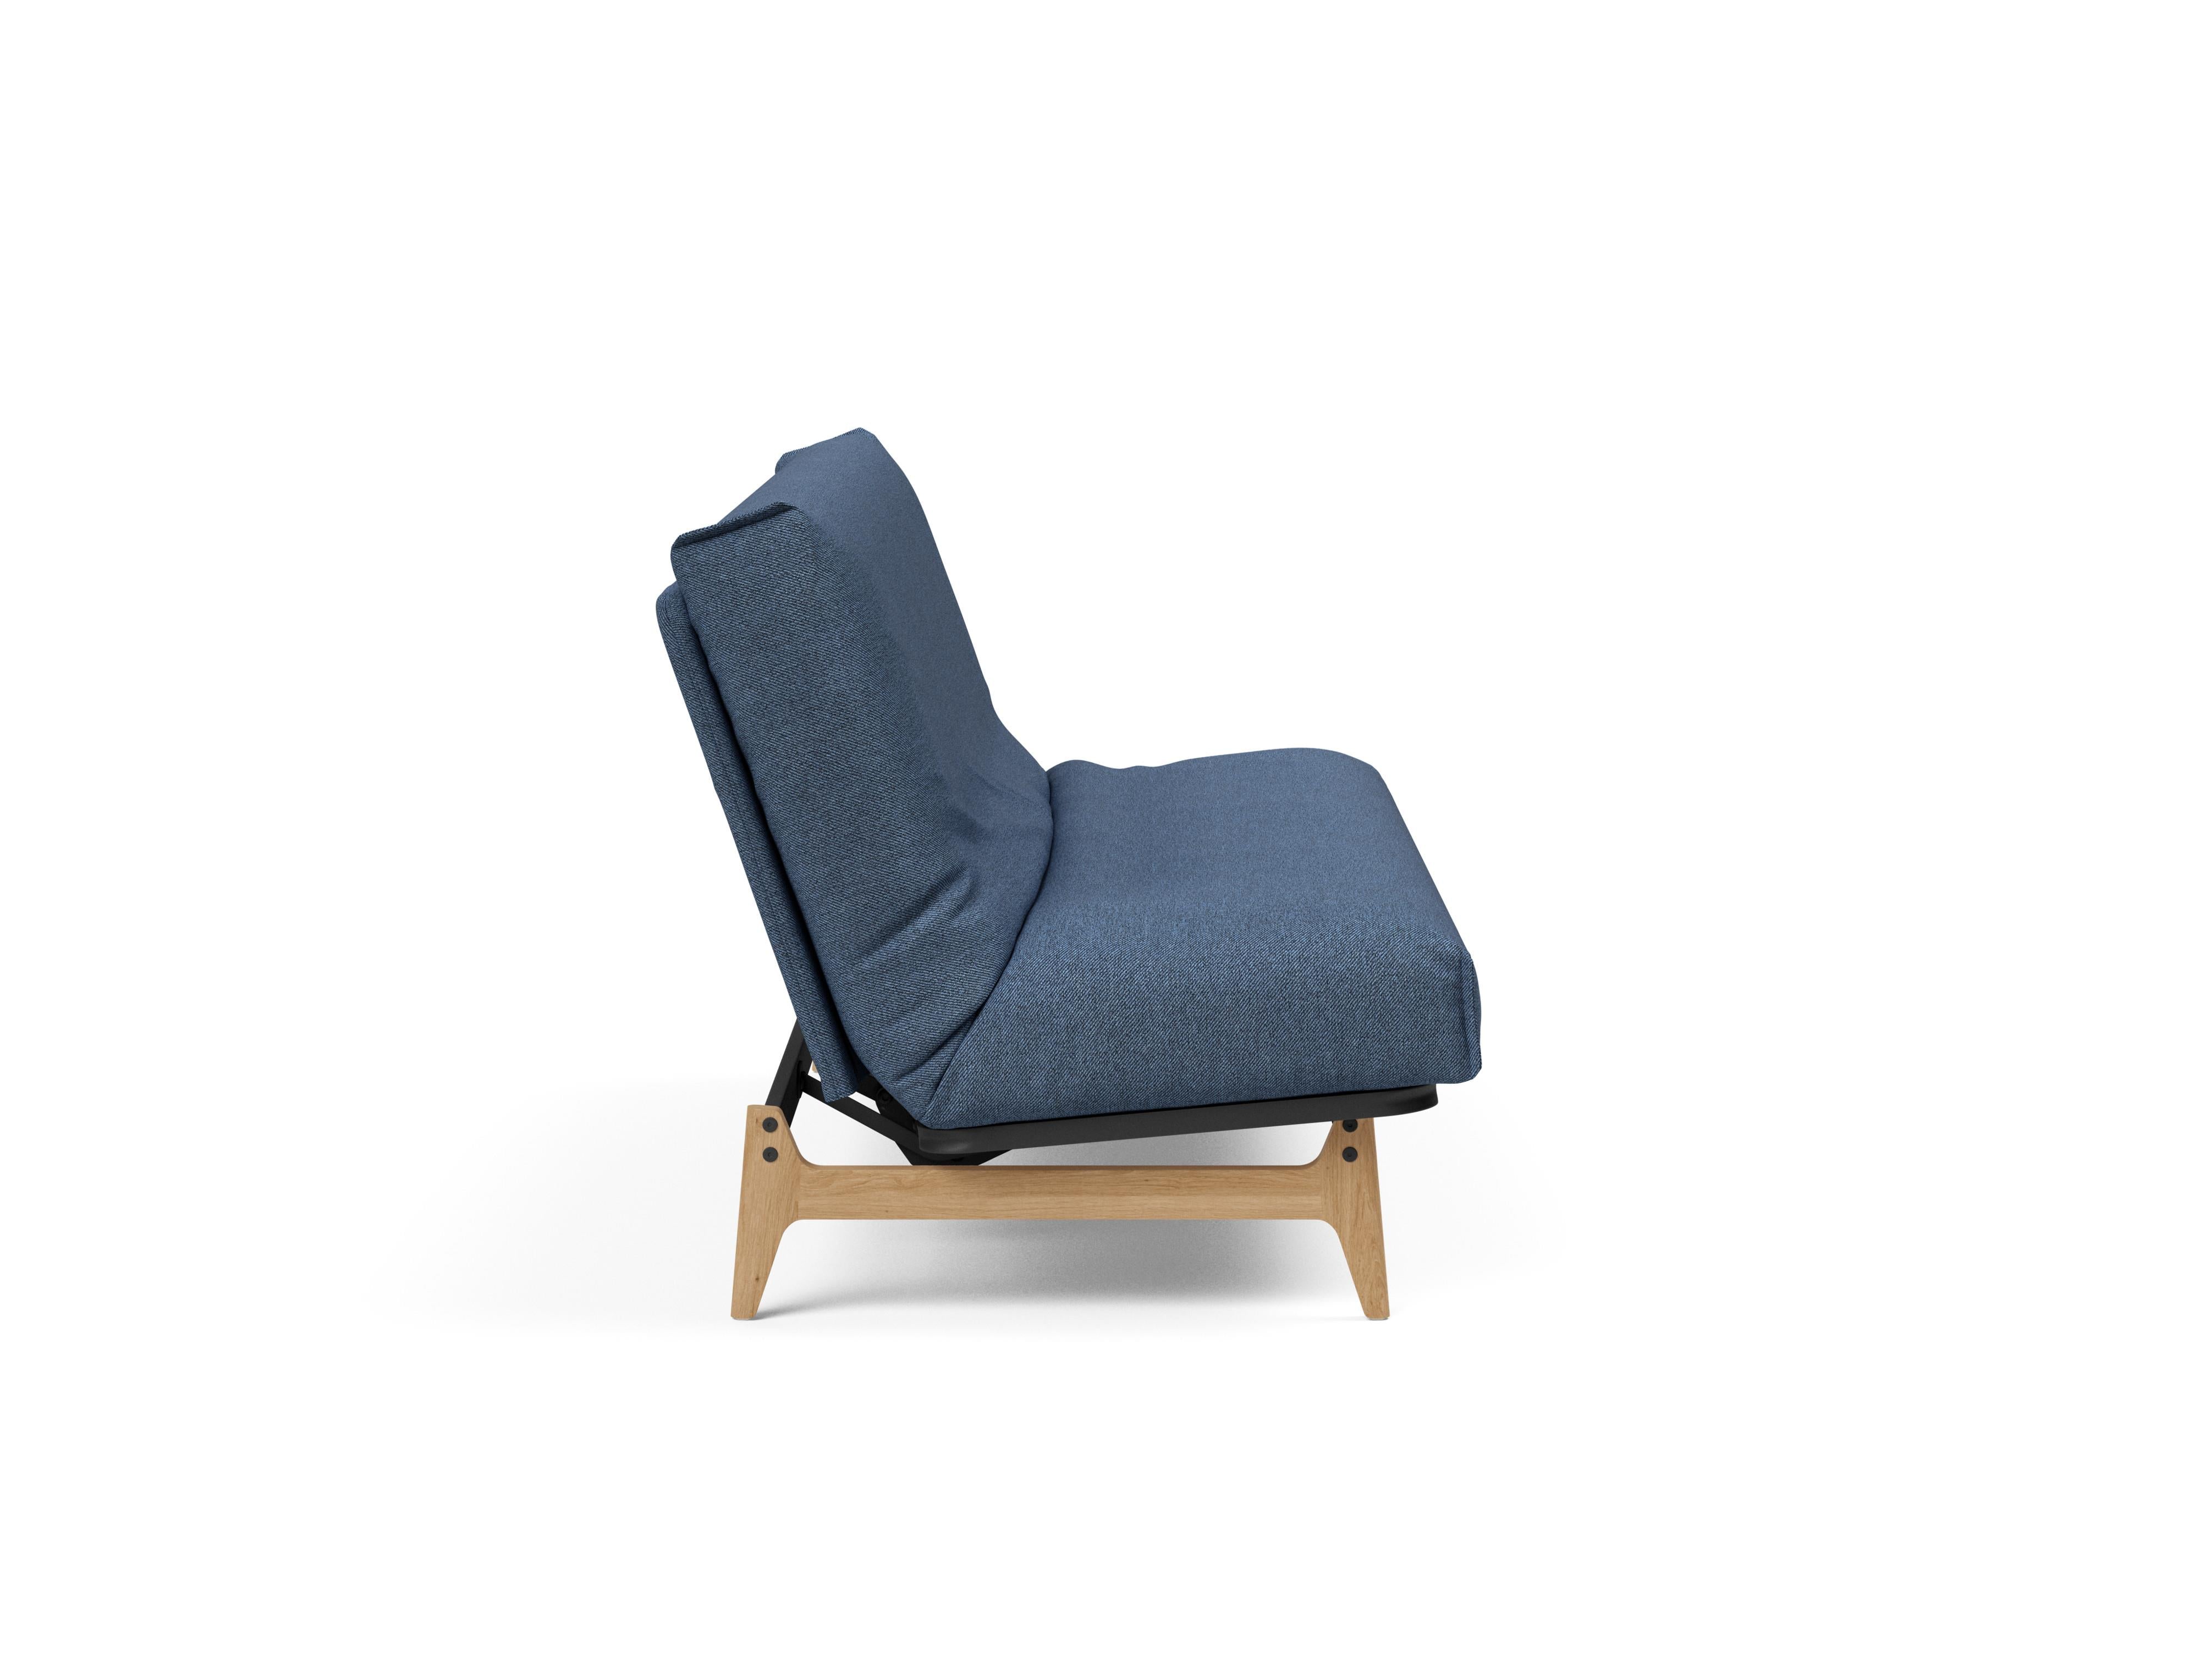 Aslak 140 Bettsofa Nordic Cover in Blau 302 präsentiert im Onlineshop von KAQTU Design AG. Bettsofa ist von Innovation Living